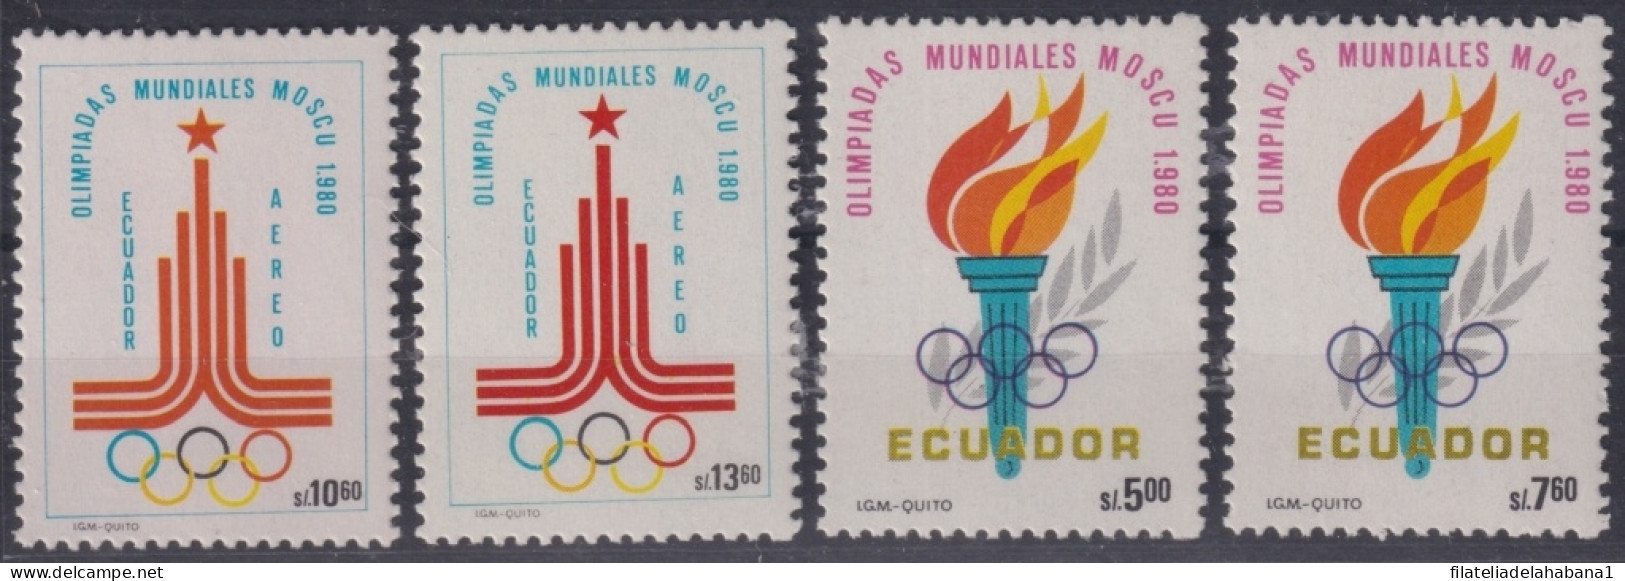 F-EX50102 ECUADOR MNH 1980 MOSCOW OLYMPIC GAMES.            - Verano 1980: Moscu